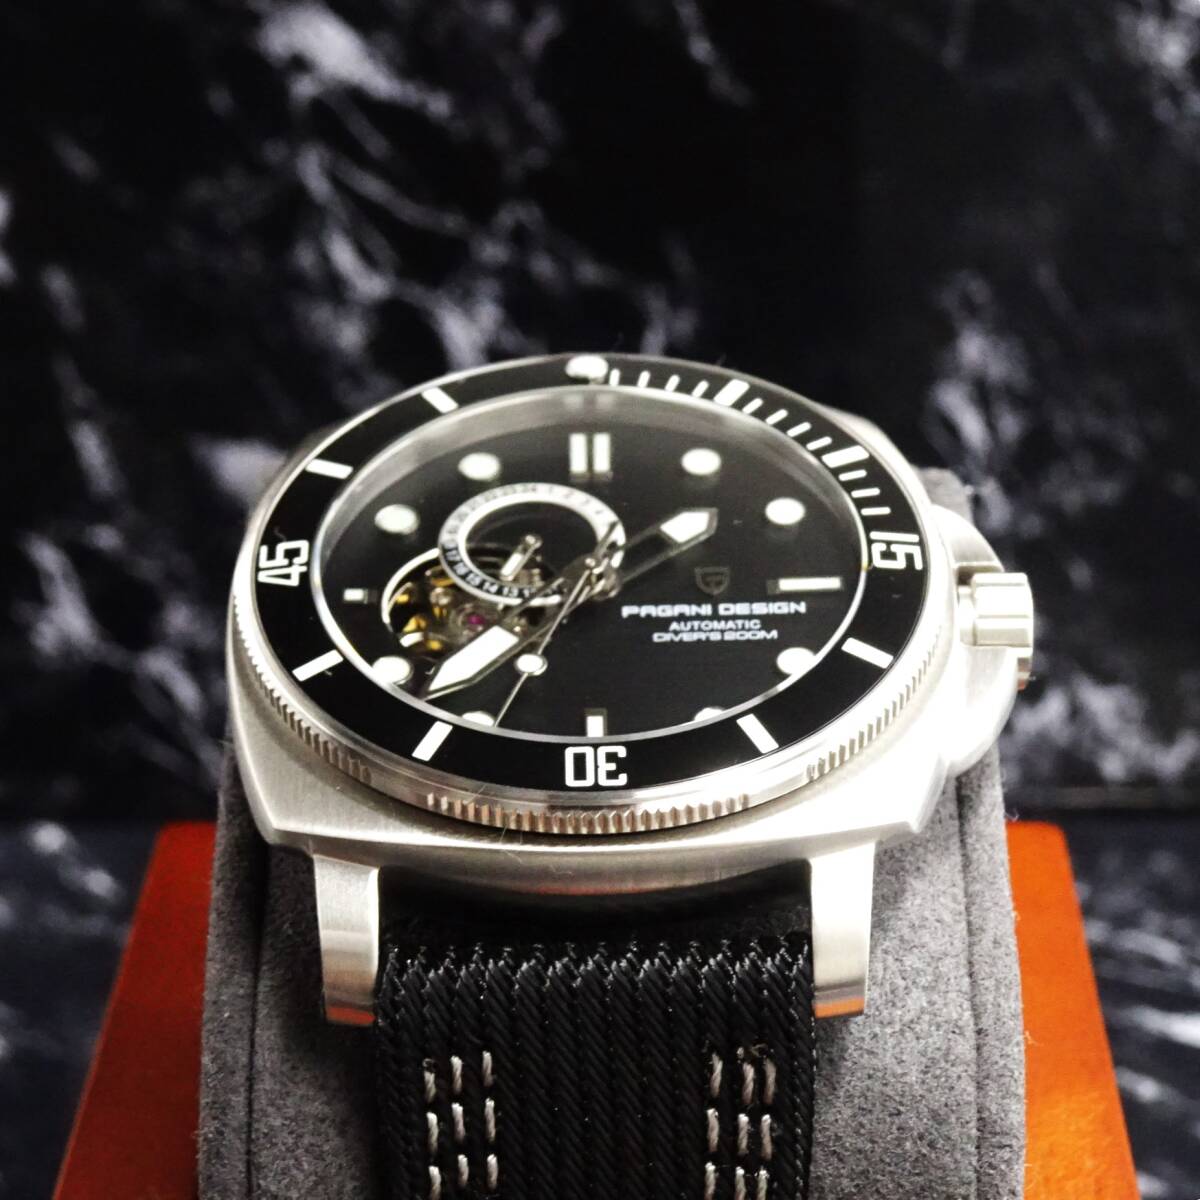 送料無料〓新品〓腕時計 パガーニデザイン PAGANI DESIGN 機械式・NH39Ａ・オープンハート・オマージュウォッチ・サファイア・PD-1736・BL